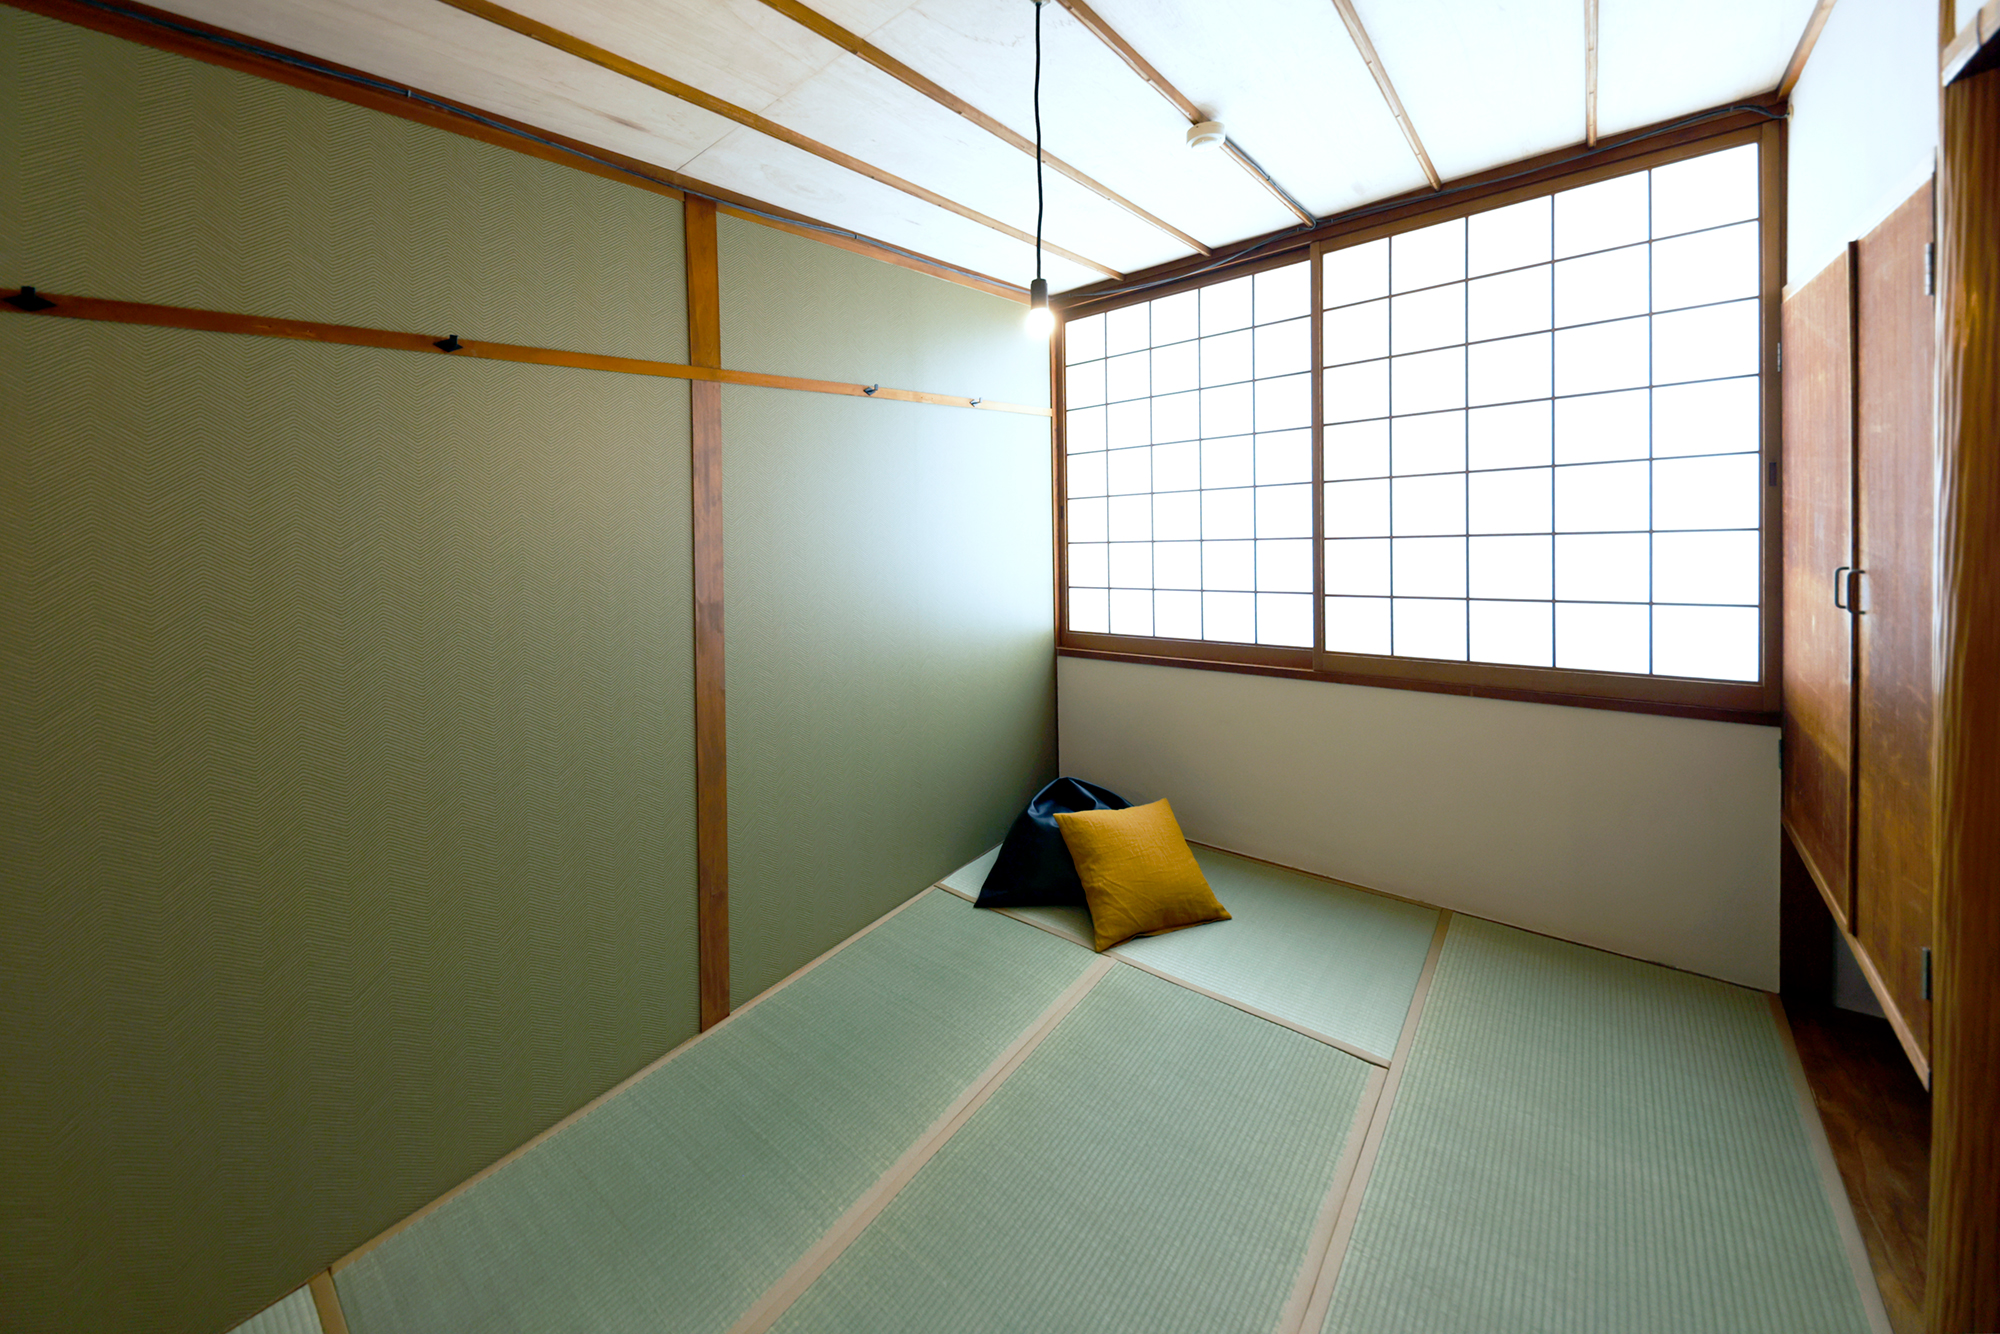 大阪市西区のホステル「FON-SU bed&breakfast」の客室に配した壁紙「ZIGZAG LIGHT」